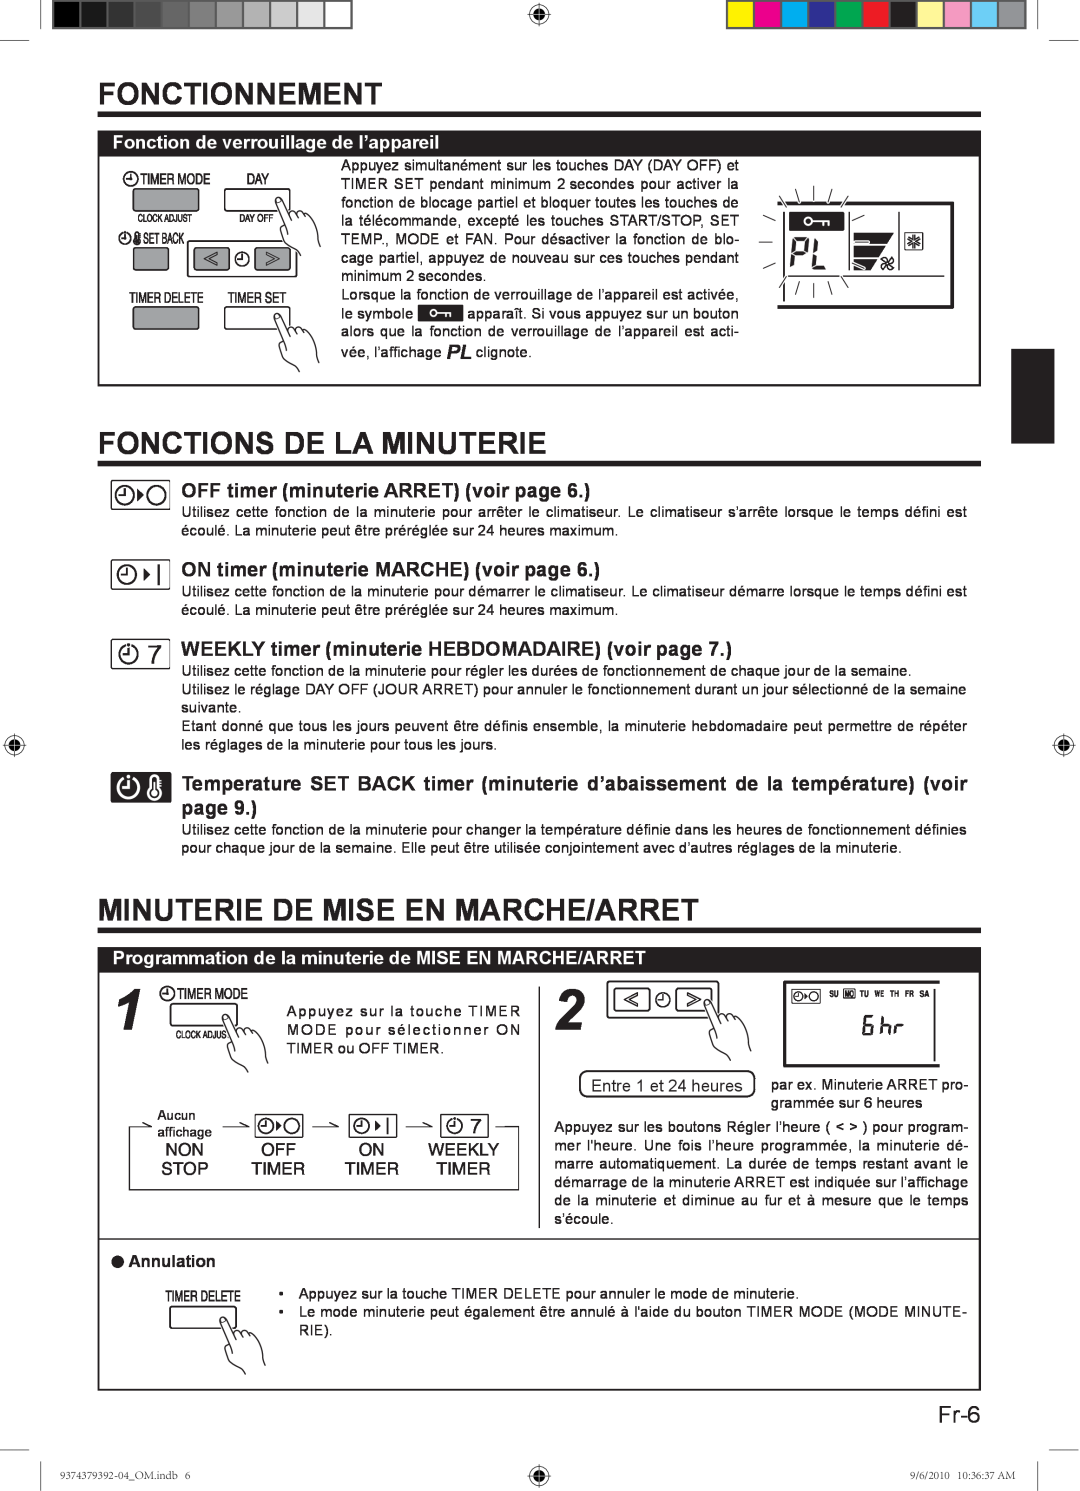 Fujitsu 9374379392-04 Fonctions De La Minuterie, Minuterie De Mise En Marche/Arret, Fr-6, Fonctionnement, Weekly, Stop 